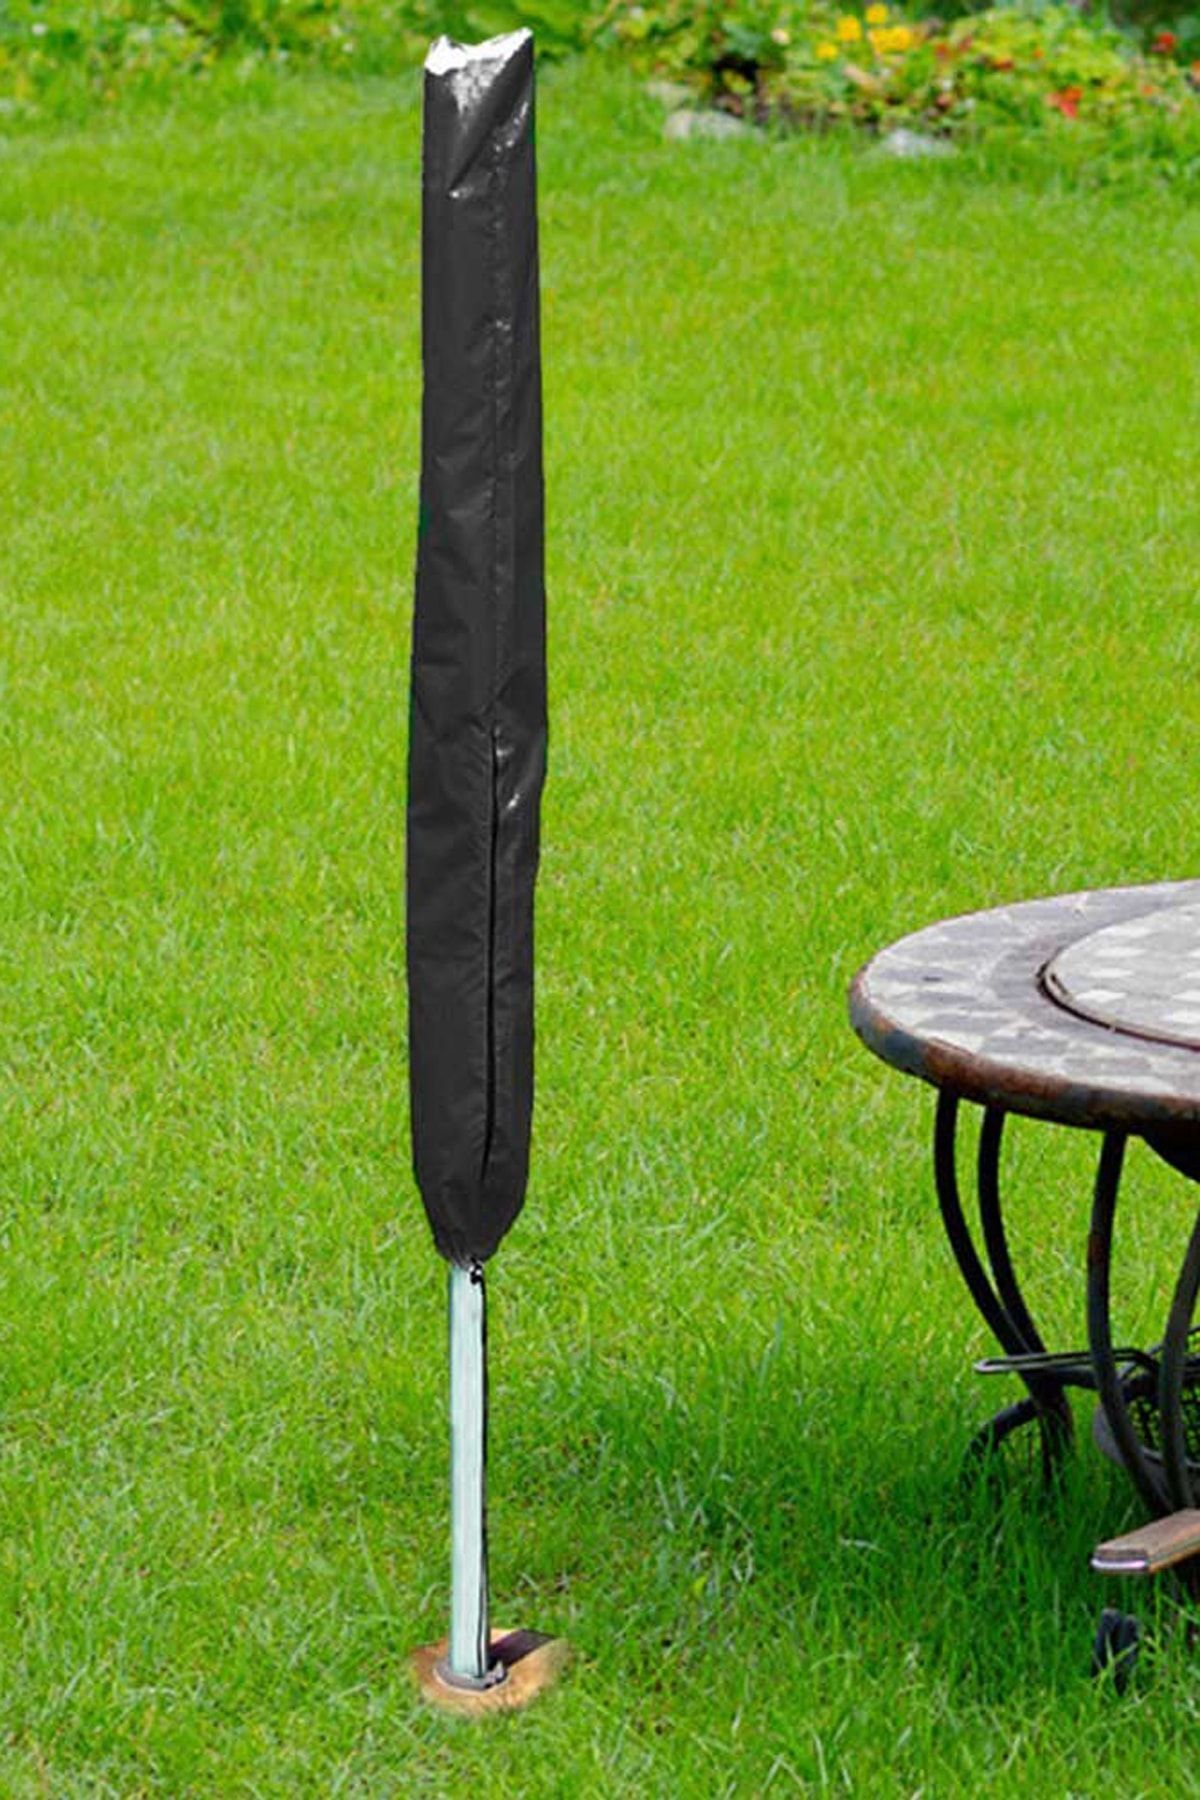 Bundera Brolly Plaj Şemsiyesi Kılıfı Su Geçirmez Şemsiye Koruma Kılıfı Şemsiye Taşıma Çantası 150x20cm